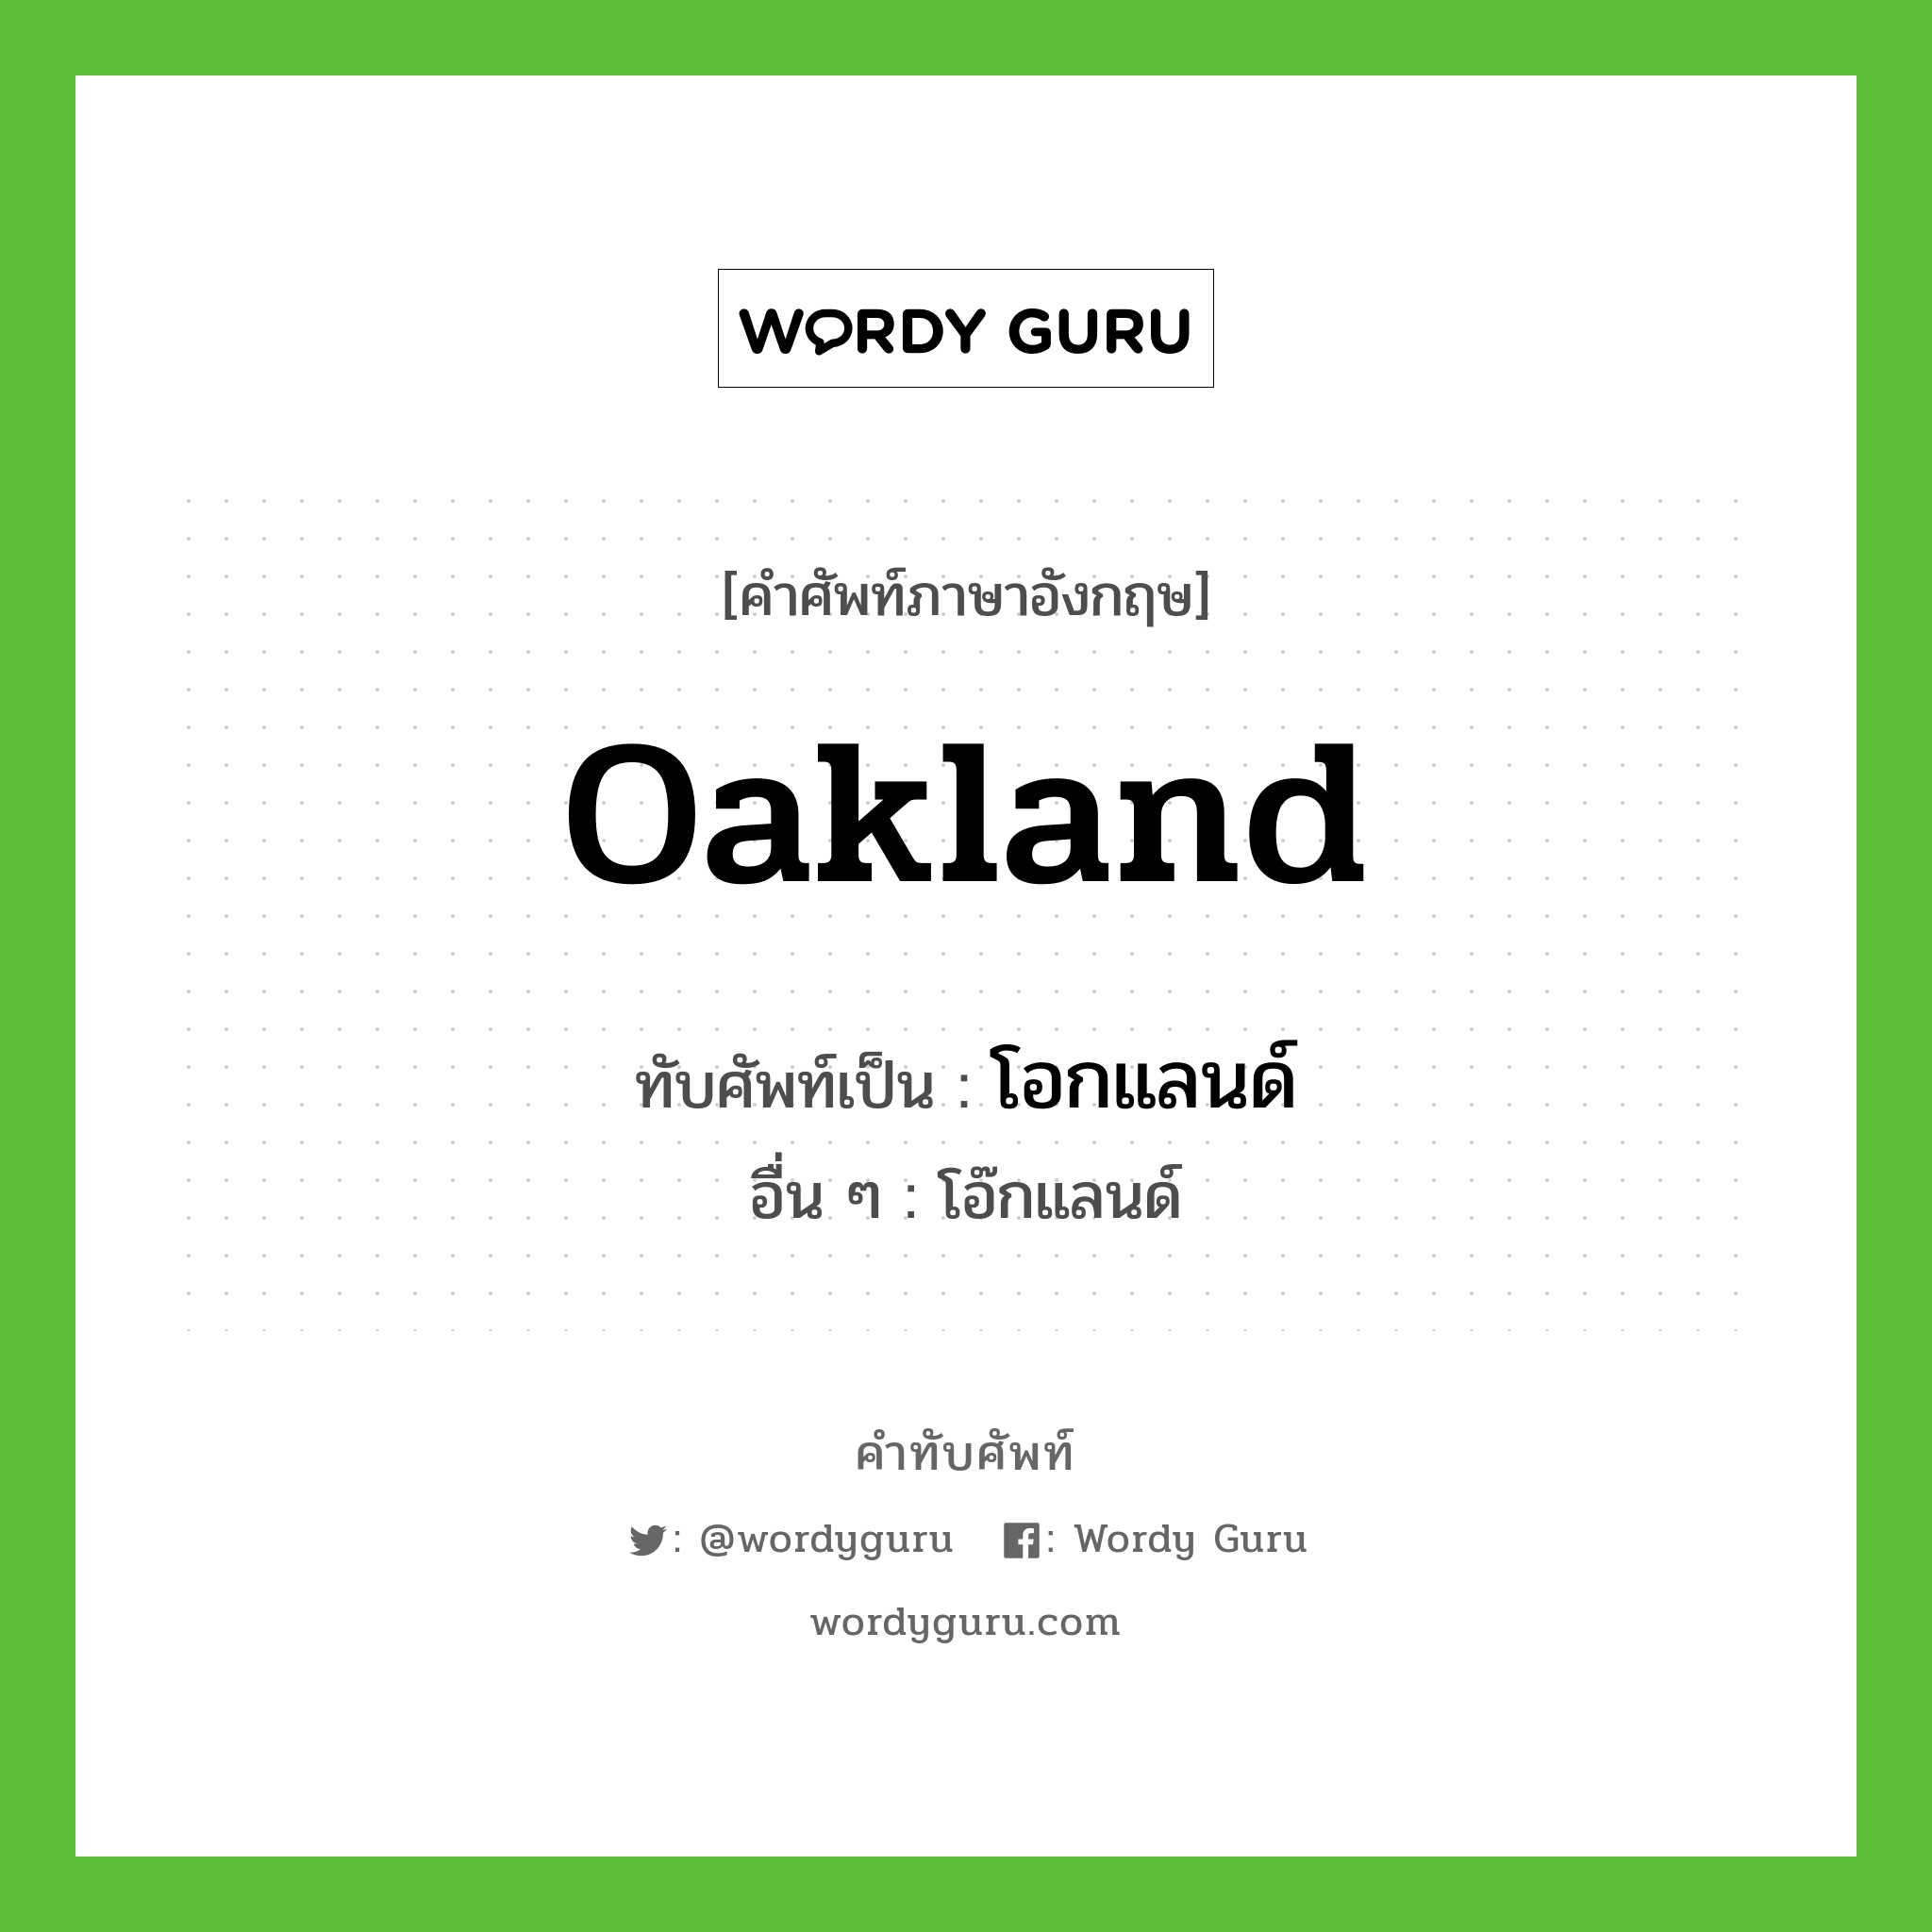 Oakland เขียนเป็นคำไทยว่าอะไร?, คำศัพท์ภาษาอังกฤษ Oakland ทับศัพท์เป็น โอกแลนด์ อื่น ๆ โอ๊กแลนด์